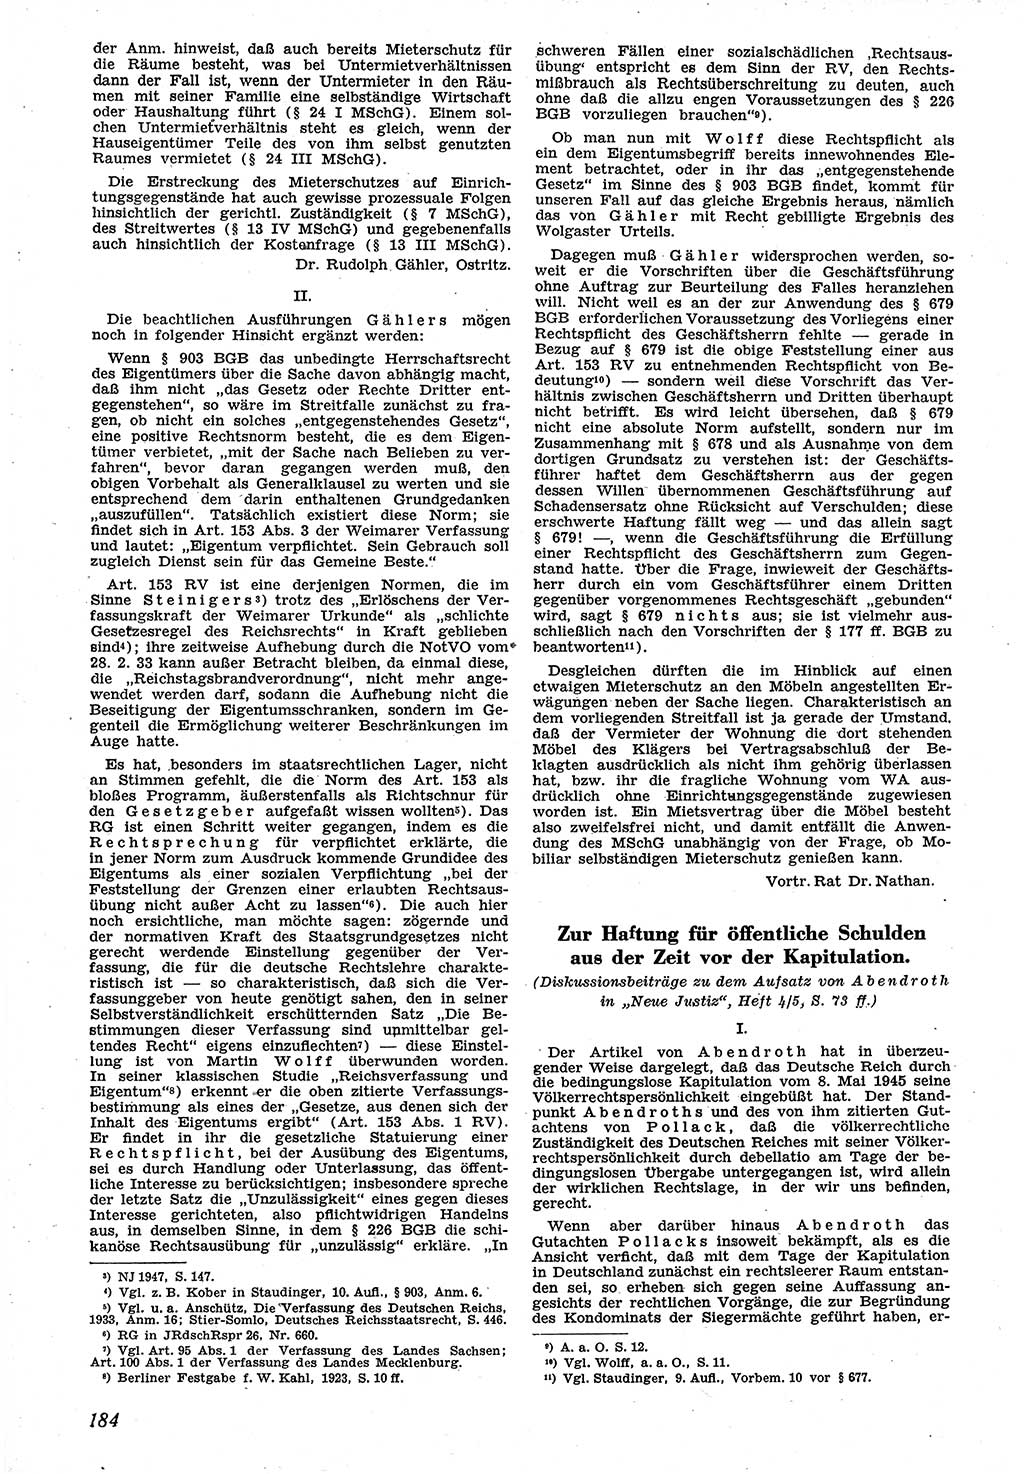 Neue Justiz (NJ), Zeitschrift für Recht und Rechtswissenschaft [Sowjetische Besatzungszone (SBZ) Deutschland], 1. Jahrgang 1947, Seite 184 (NJ SBZ Dtl. 1947, S. 184)